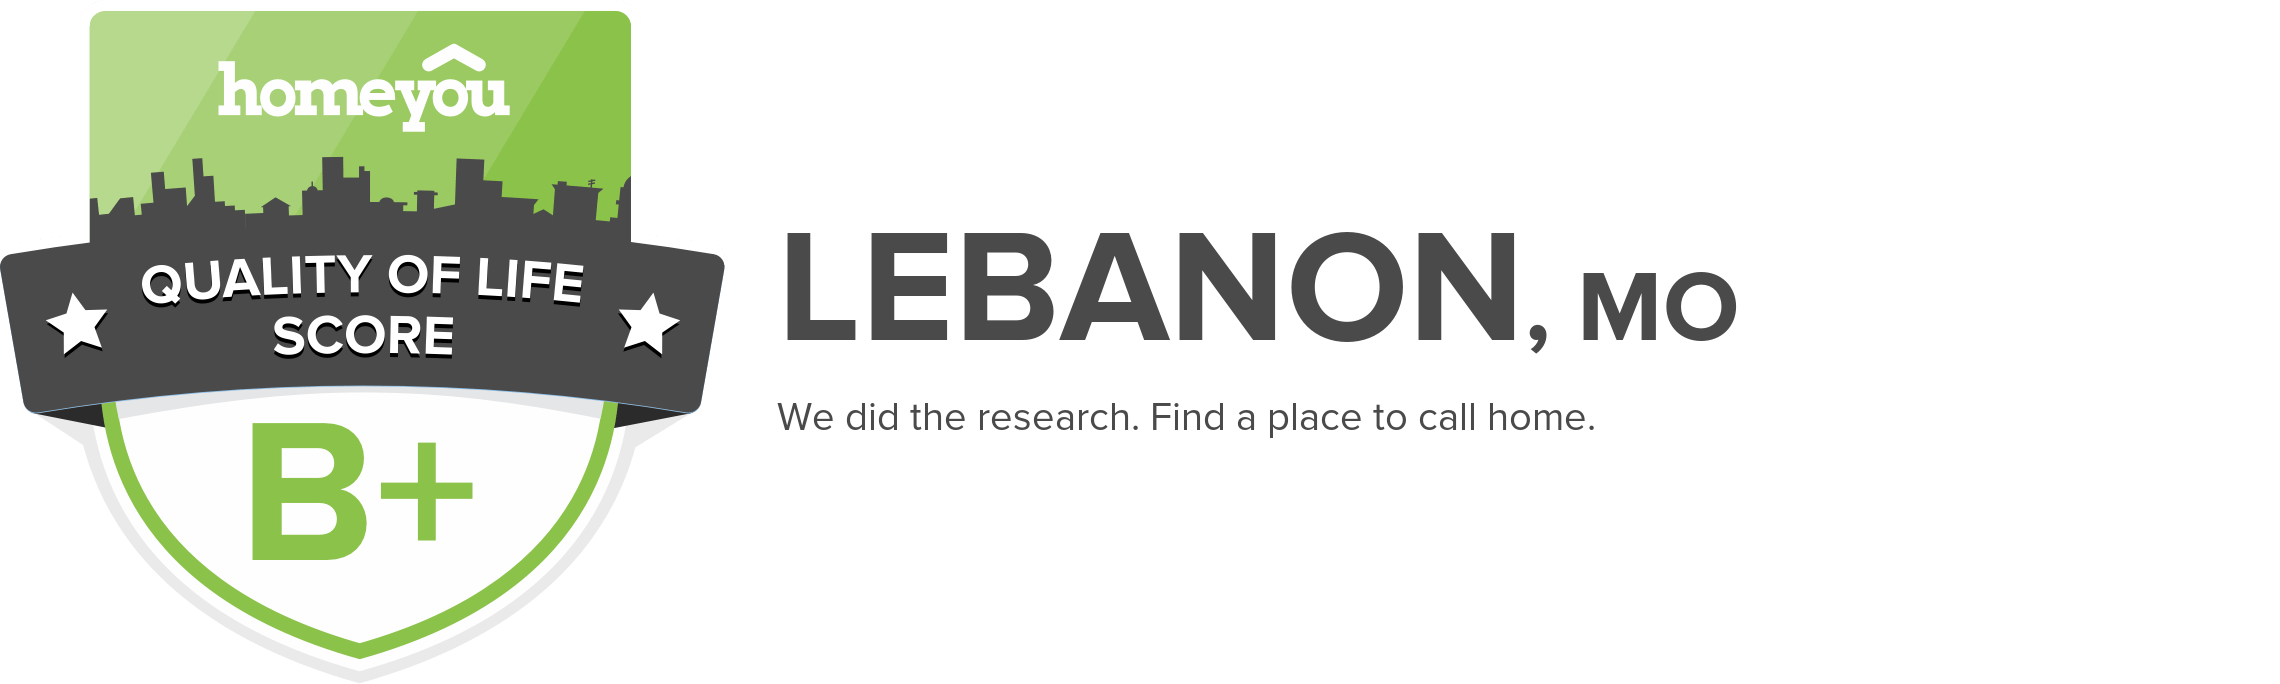 Lebanon, MO